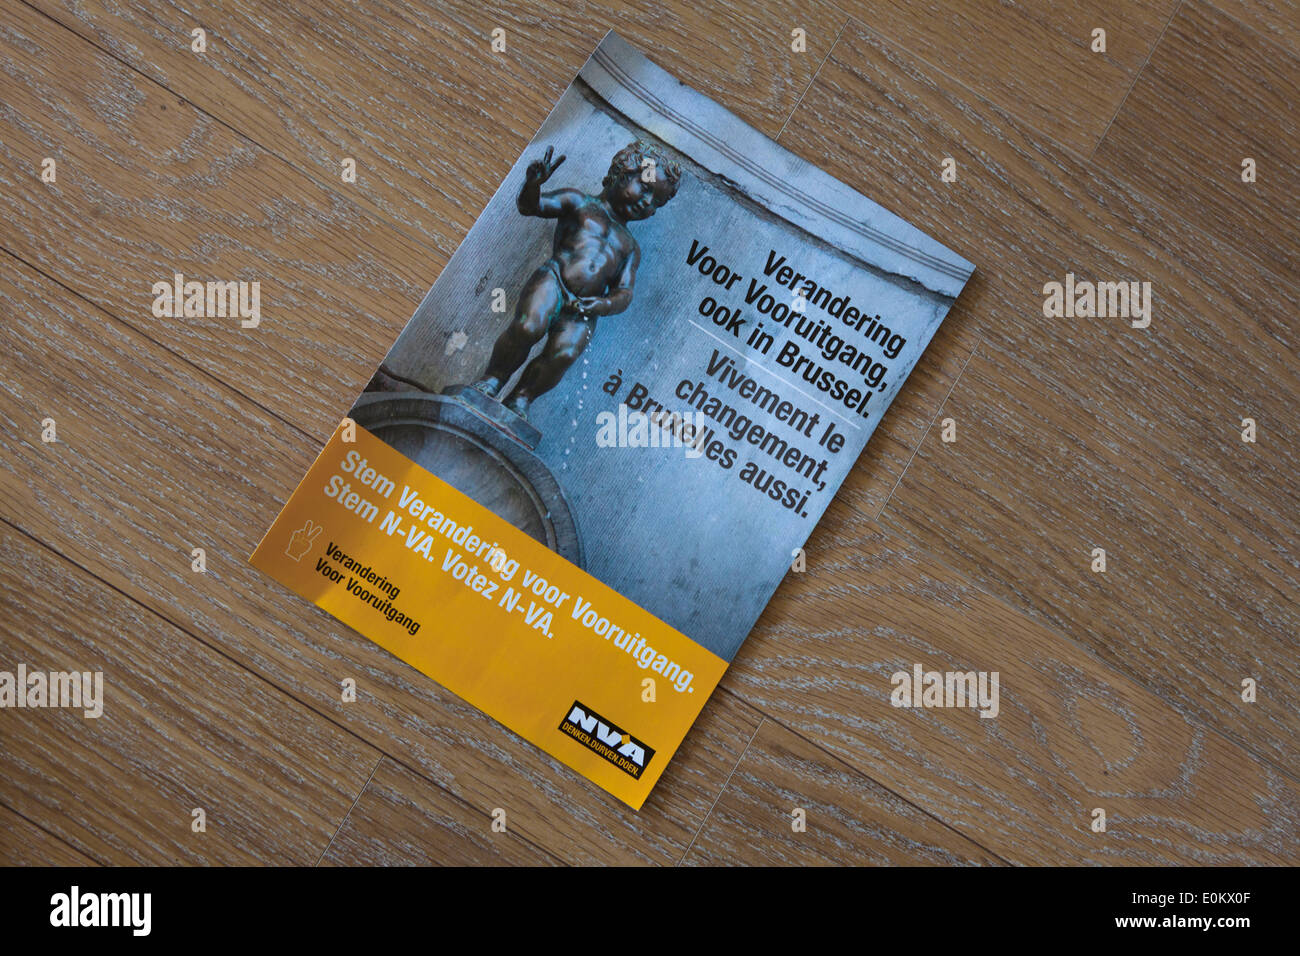 Les élections fédérales belges 2014:l'aile droite de l'ANV parti flamand nationaliste brochure. Banque D'Images